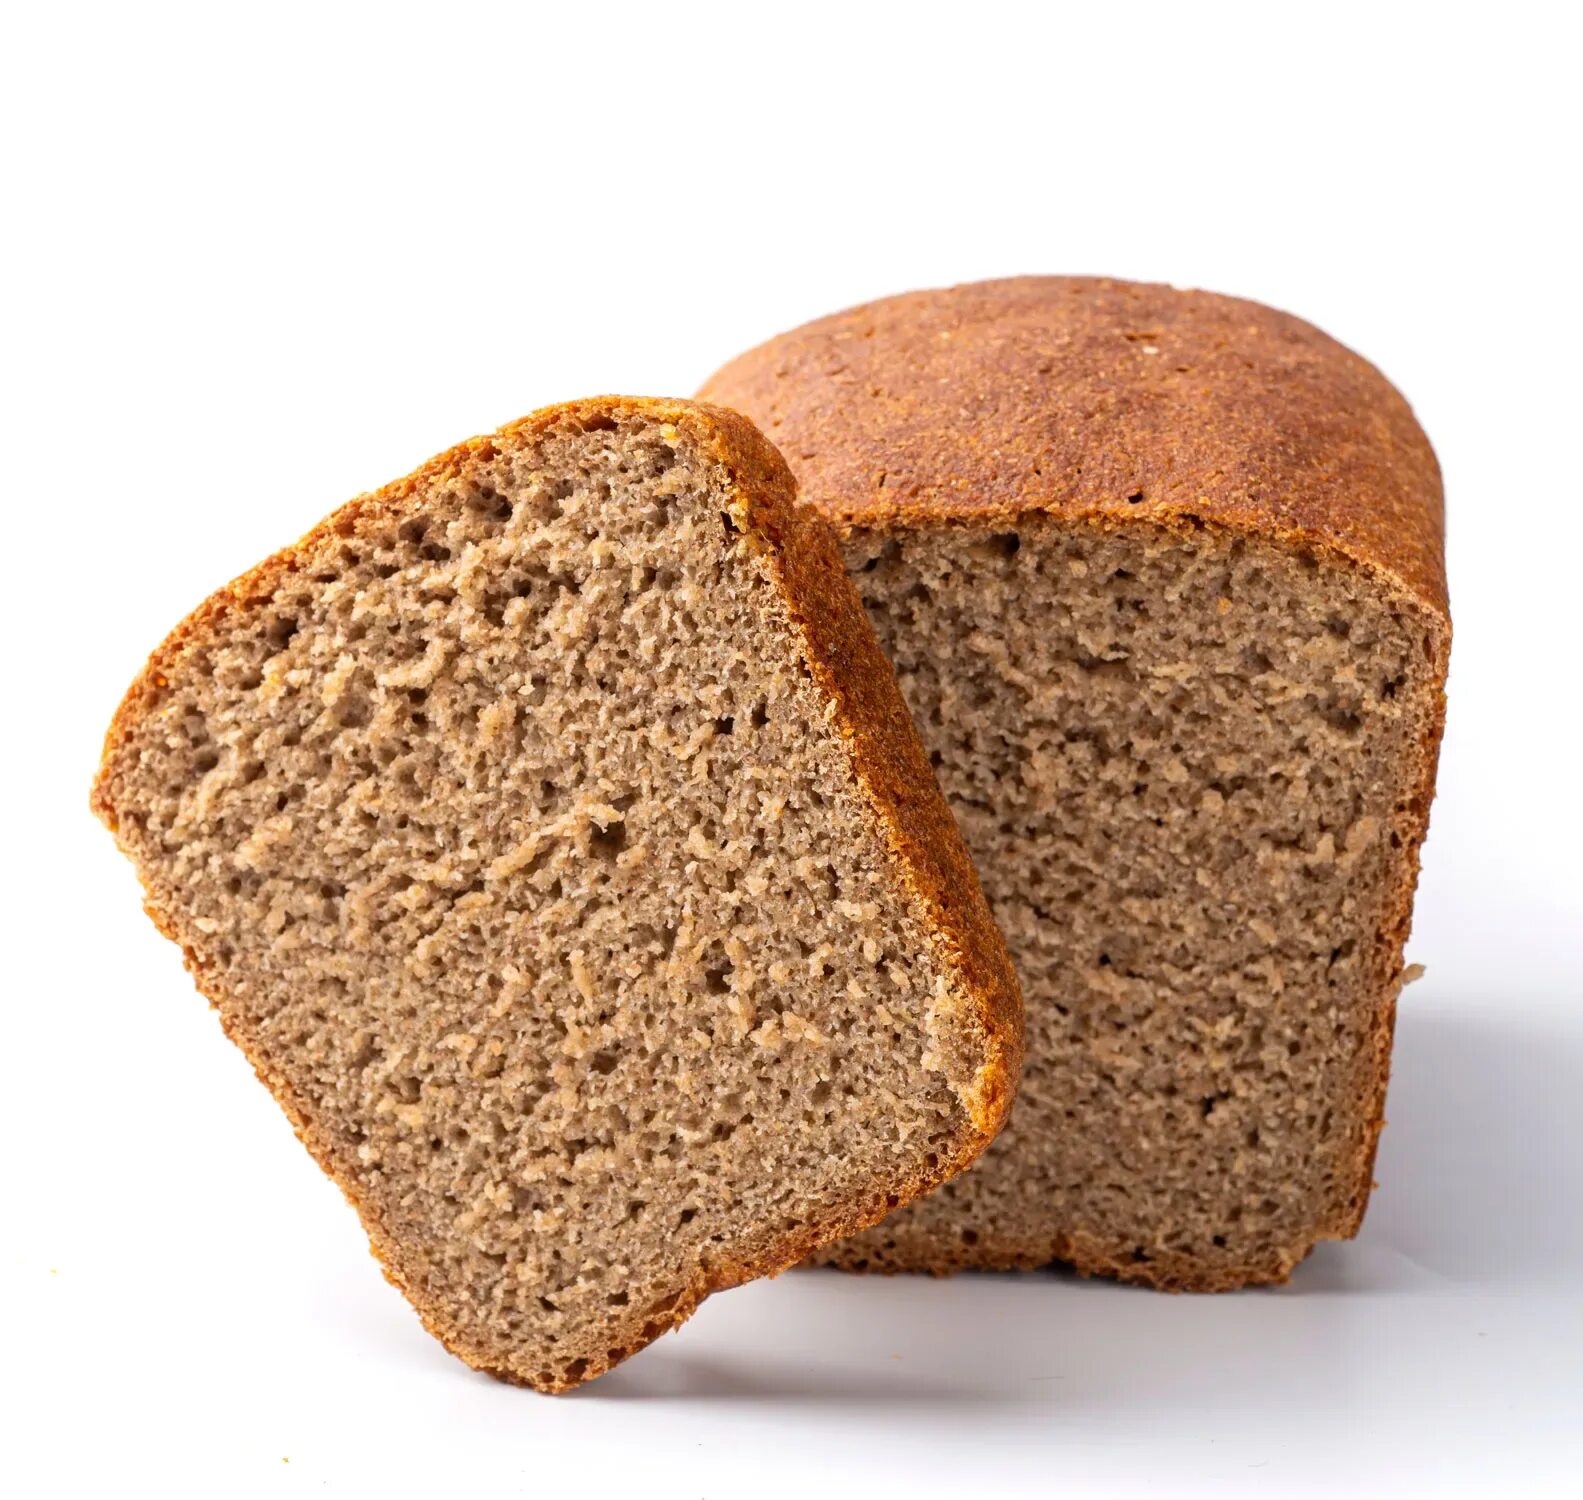 Ржано-пшеничный хлеб с отрубями. Черный хлеб. Черный ржаной хлеб. Хлеб Житный. Название ржаного хлеба